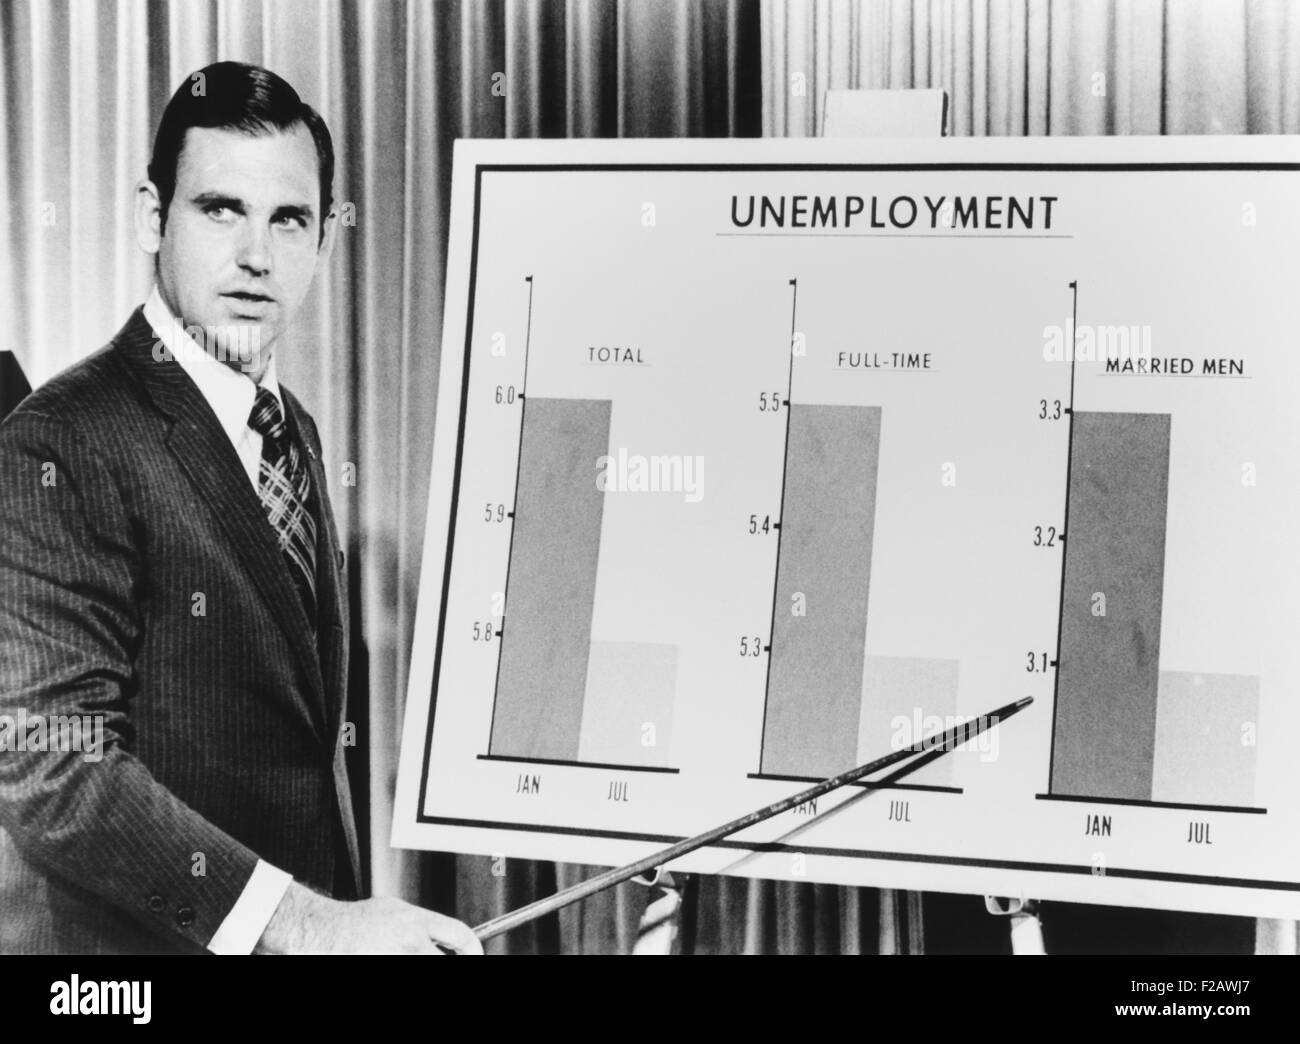 Pres. Secretario de Prensa del Presidente Richard Nixon, Ronald Ziegler, resúmenes de información periodística sobre el desempleo. El Departamento del Trabajo informó que el desempleo del país se deslizó hasta 5,8% en julio de 1971. (CSU 2015 11 1357) Foto de stock